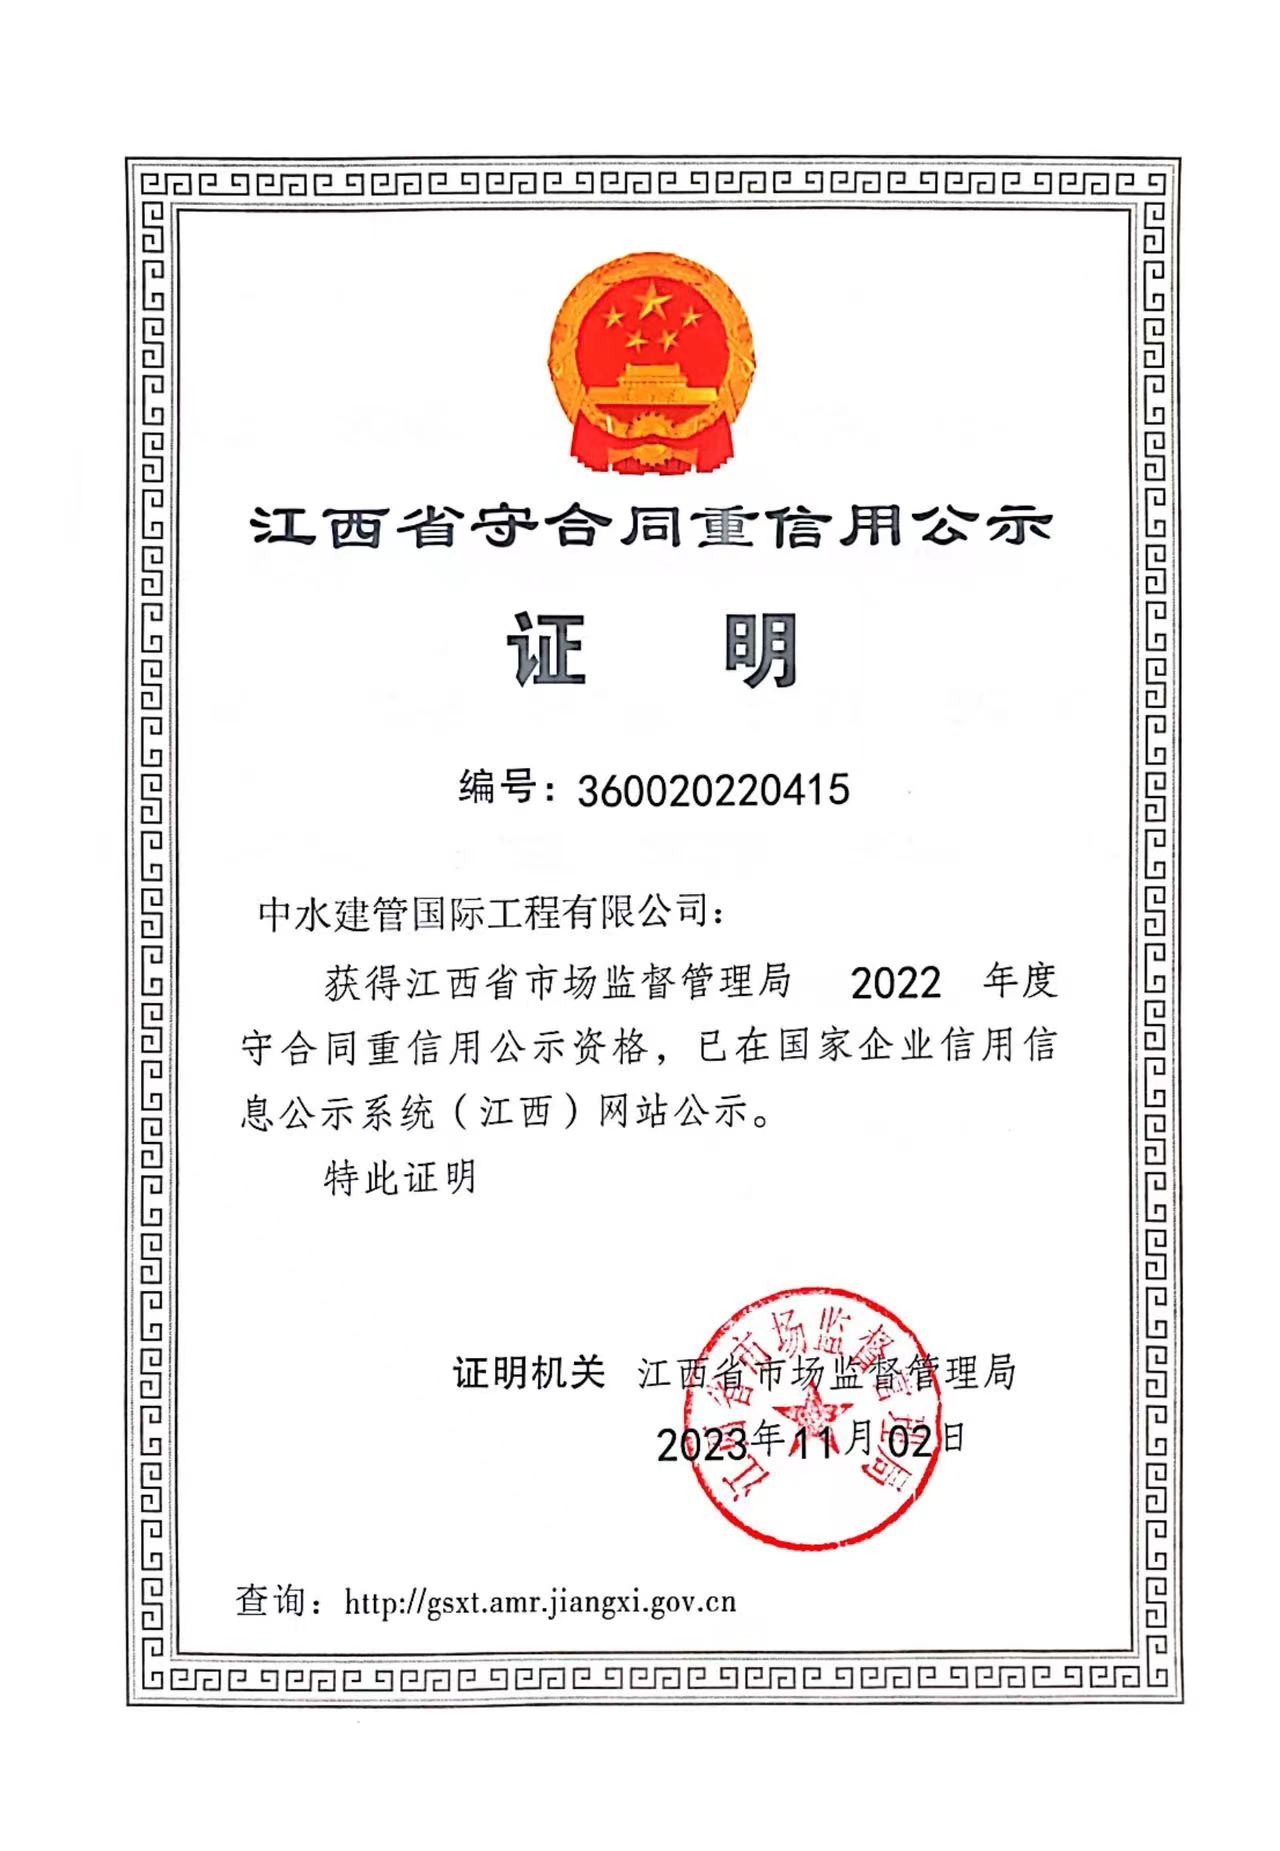 2022年度江西省守合同重信用证书